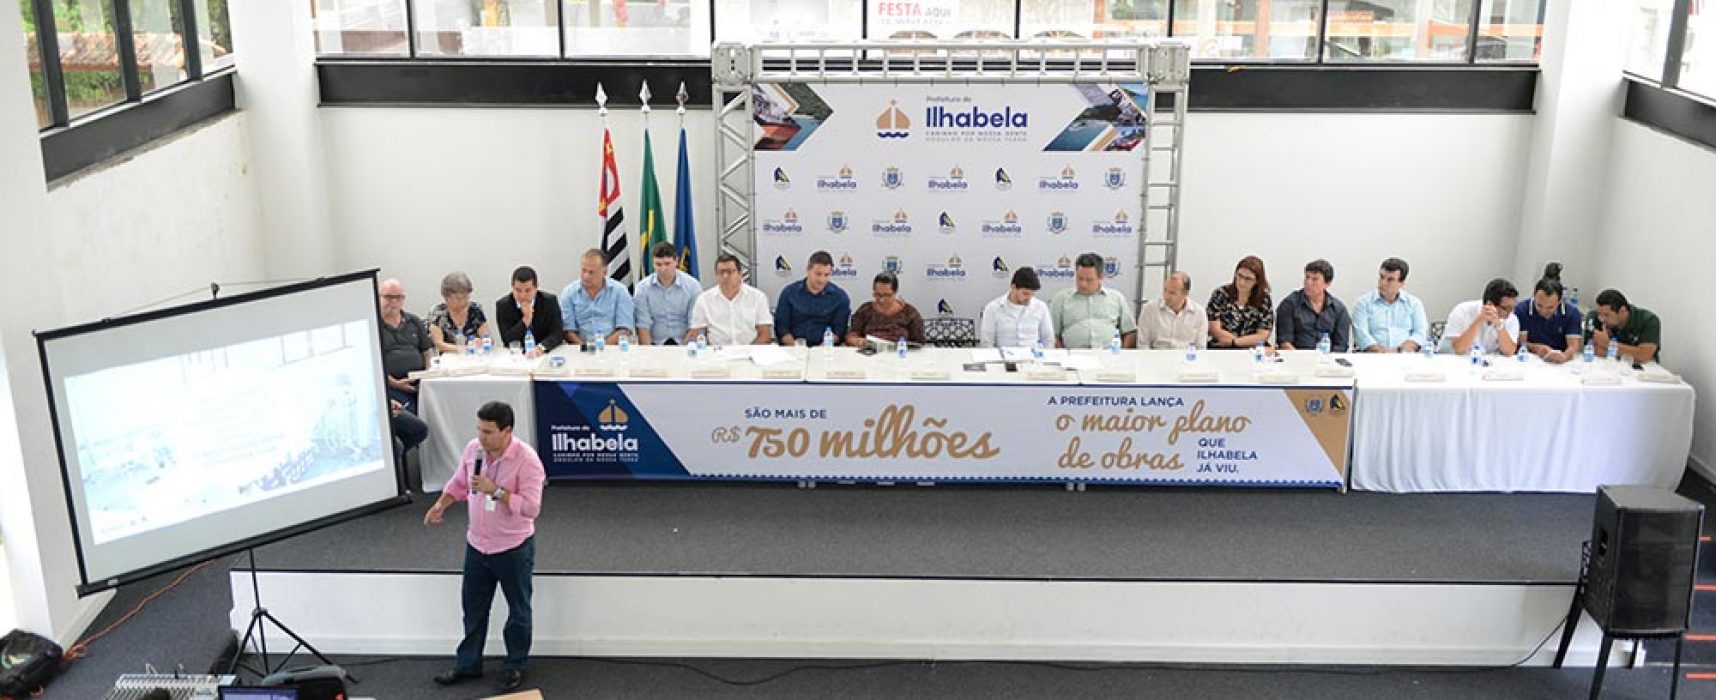 Prefeitura de Ilhabela lança o maior plano de obras da história do arquipélago